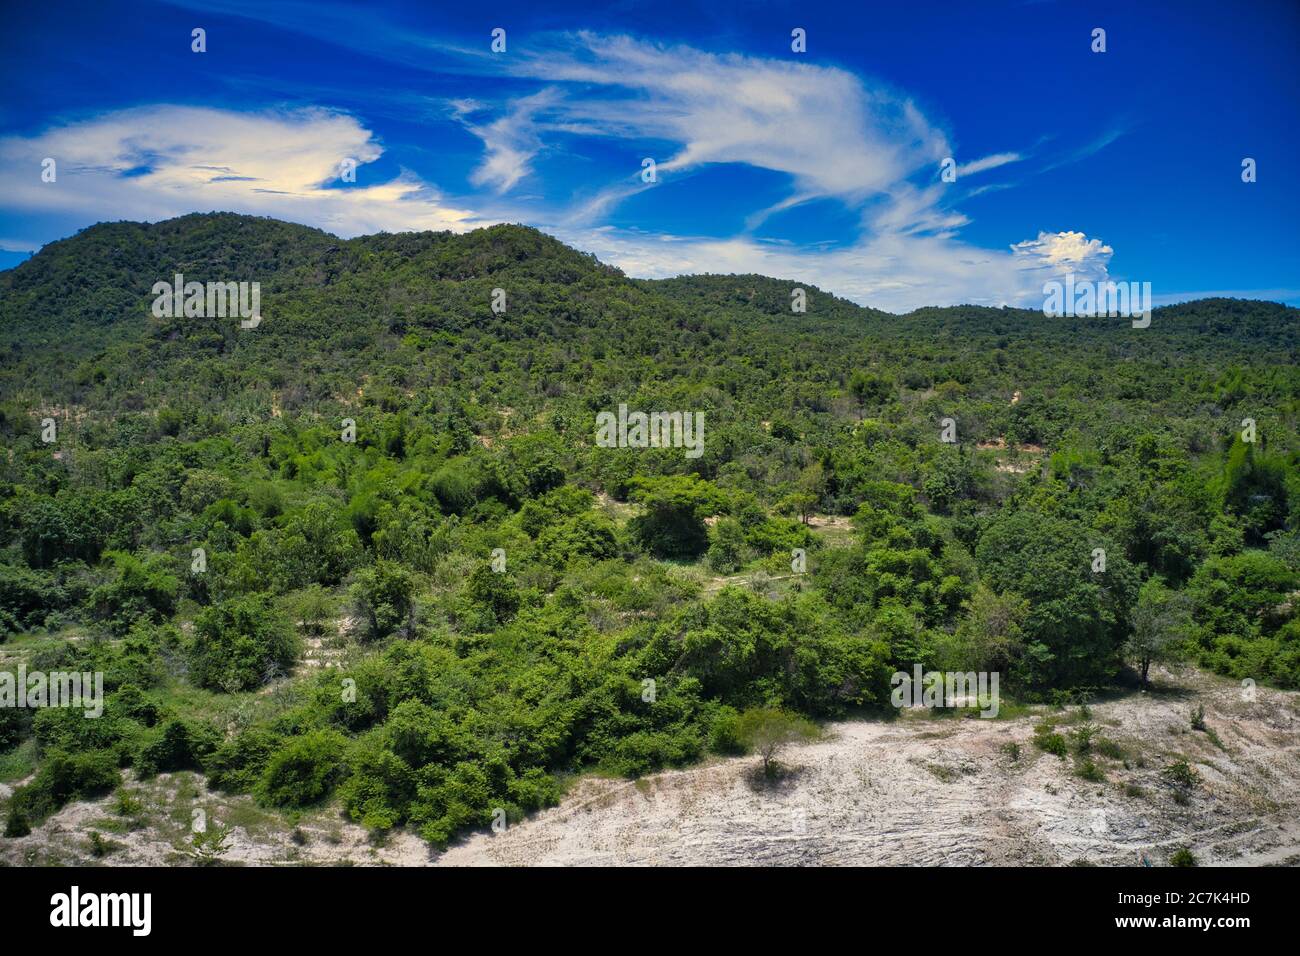 Questa foto unica mostra il paesaggio di Hua Hin Thailandia e sullo sfondo le montagne verdi con un cielo blu leggermente nuvoloso Foto Stock